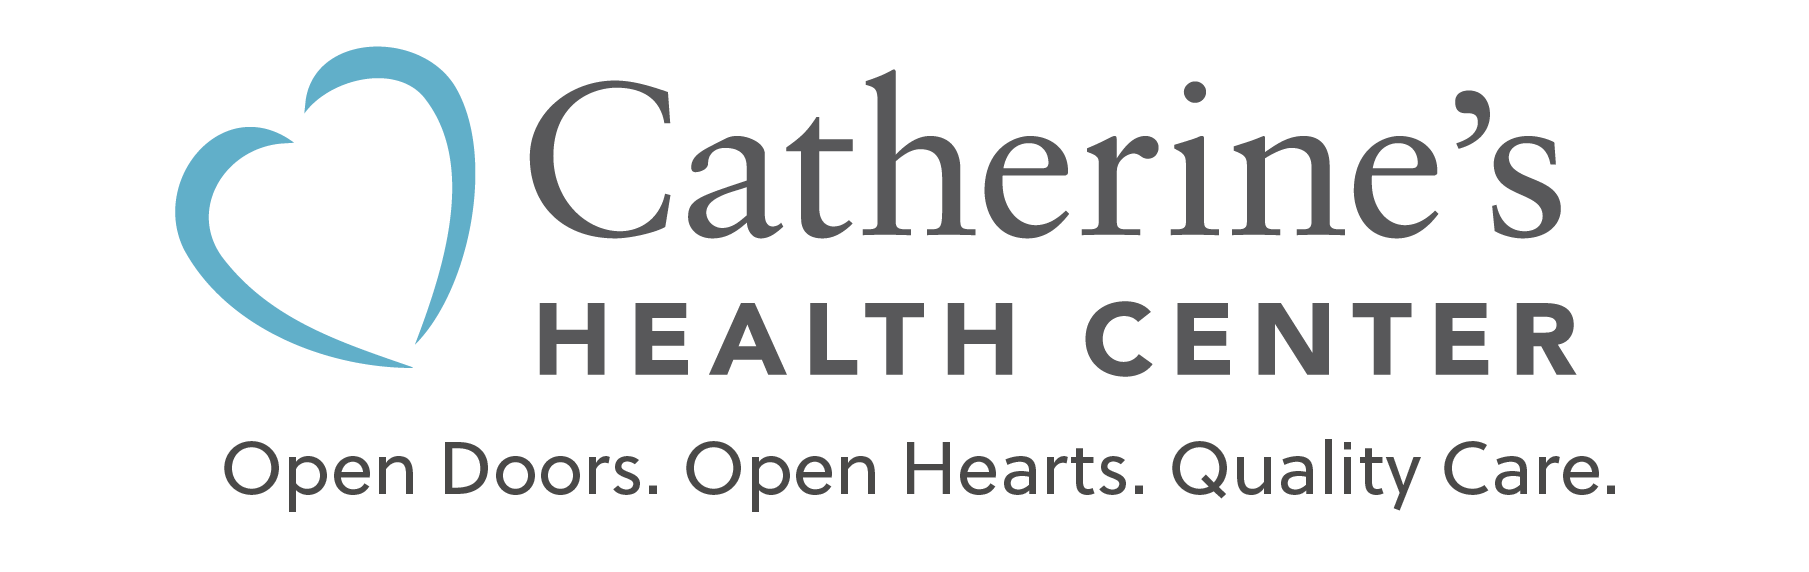 Catherine's Health Center